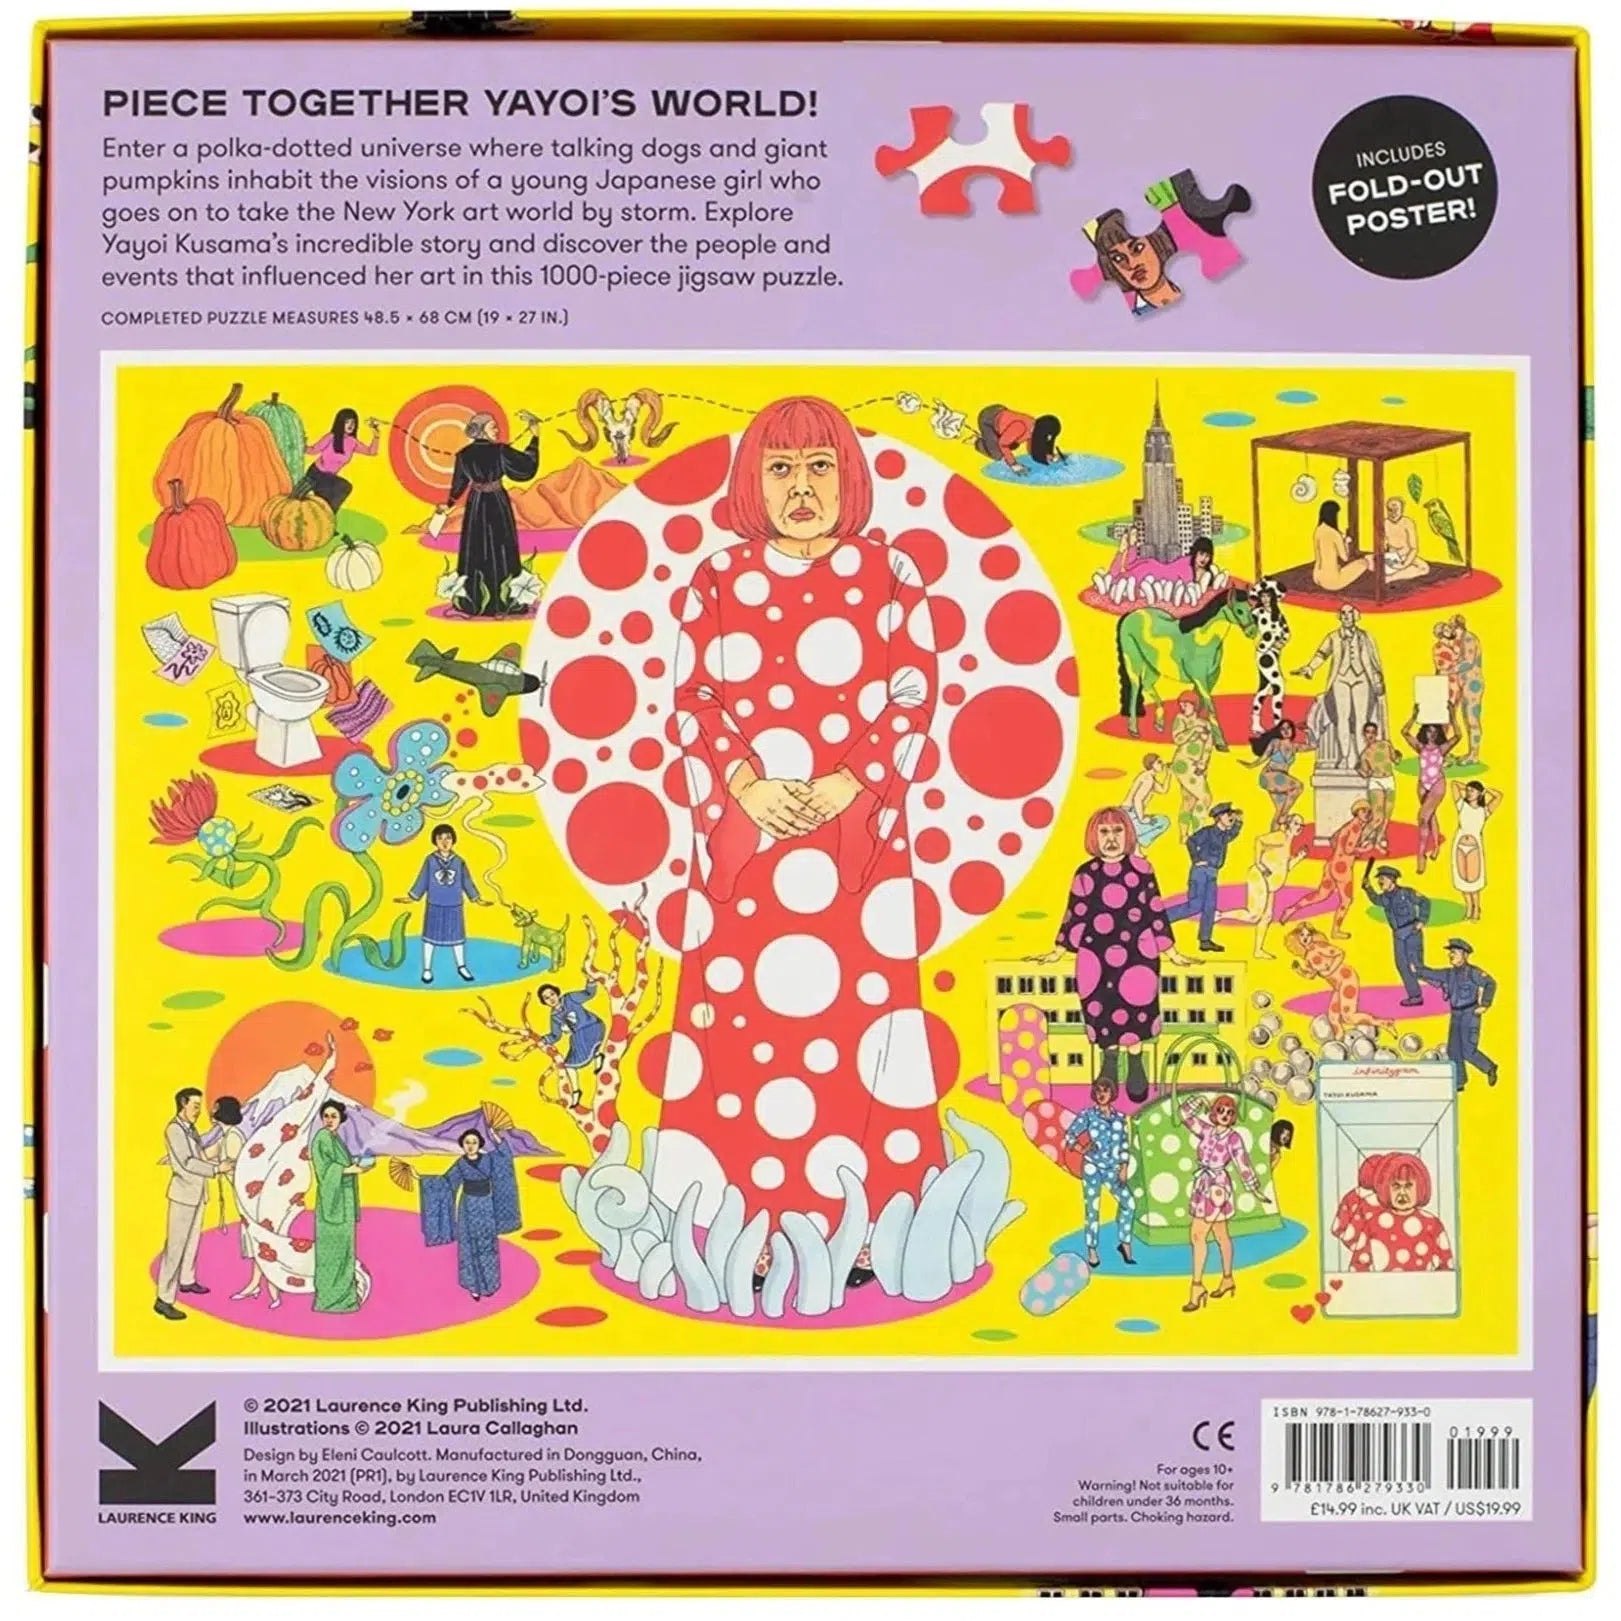 The World of Yayoi Kusama Puzzle 1000 Piece Jigsaw Puzzle Laurence King